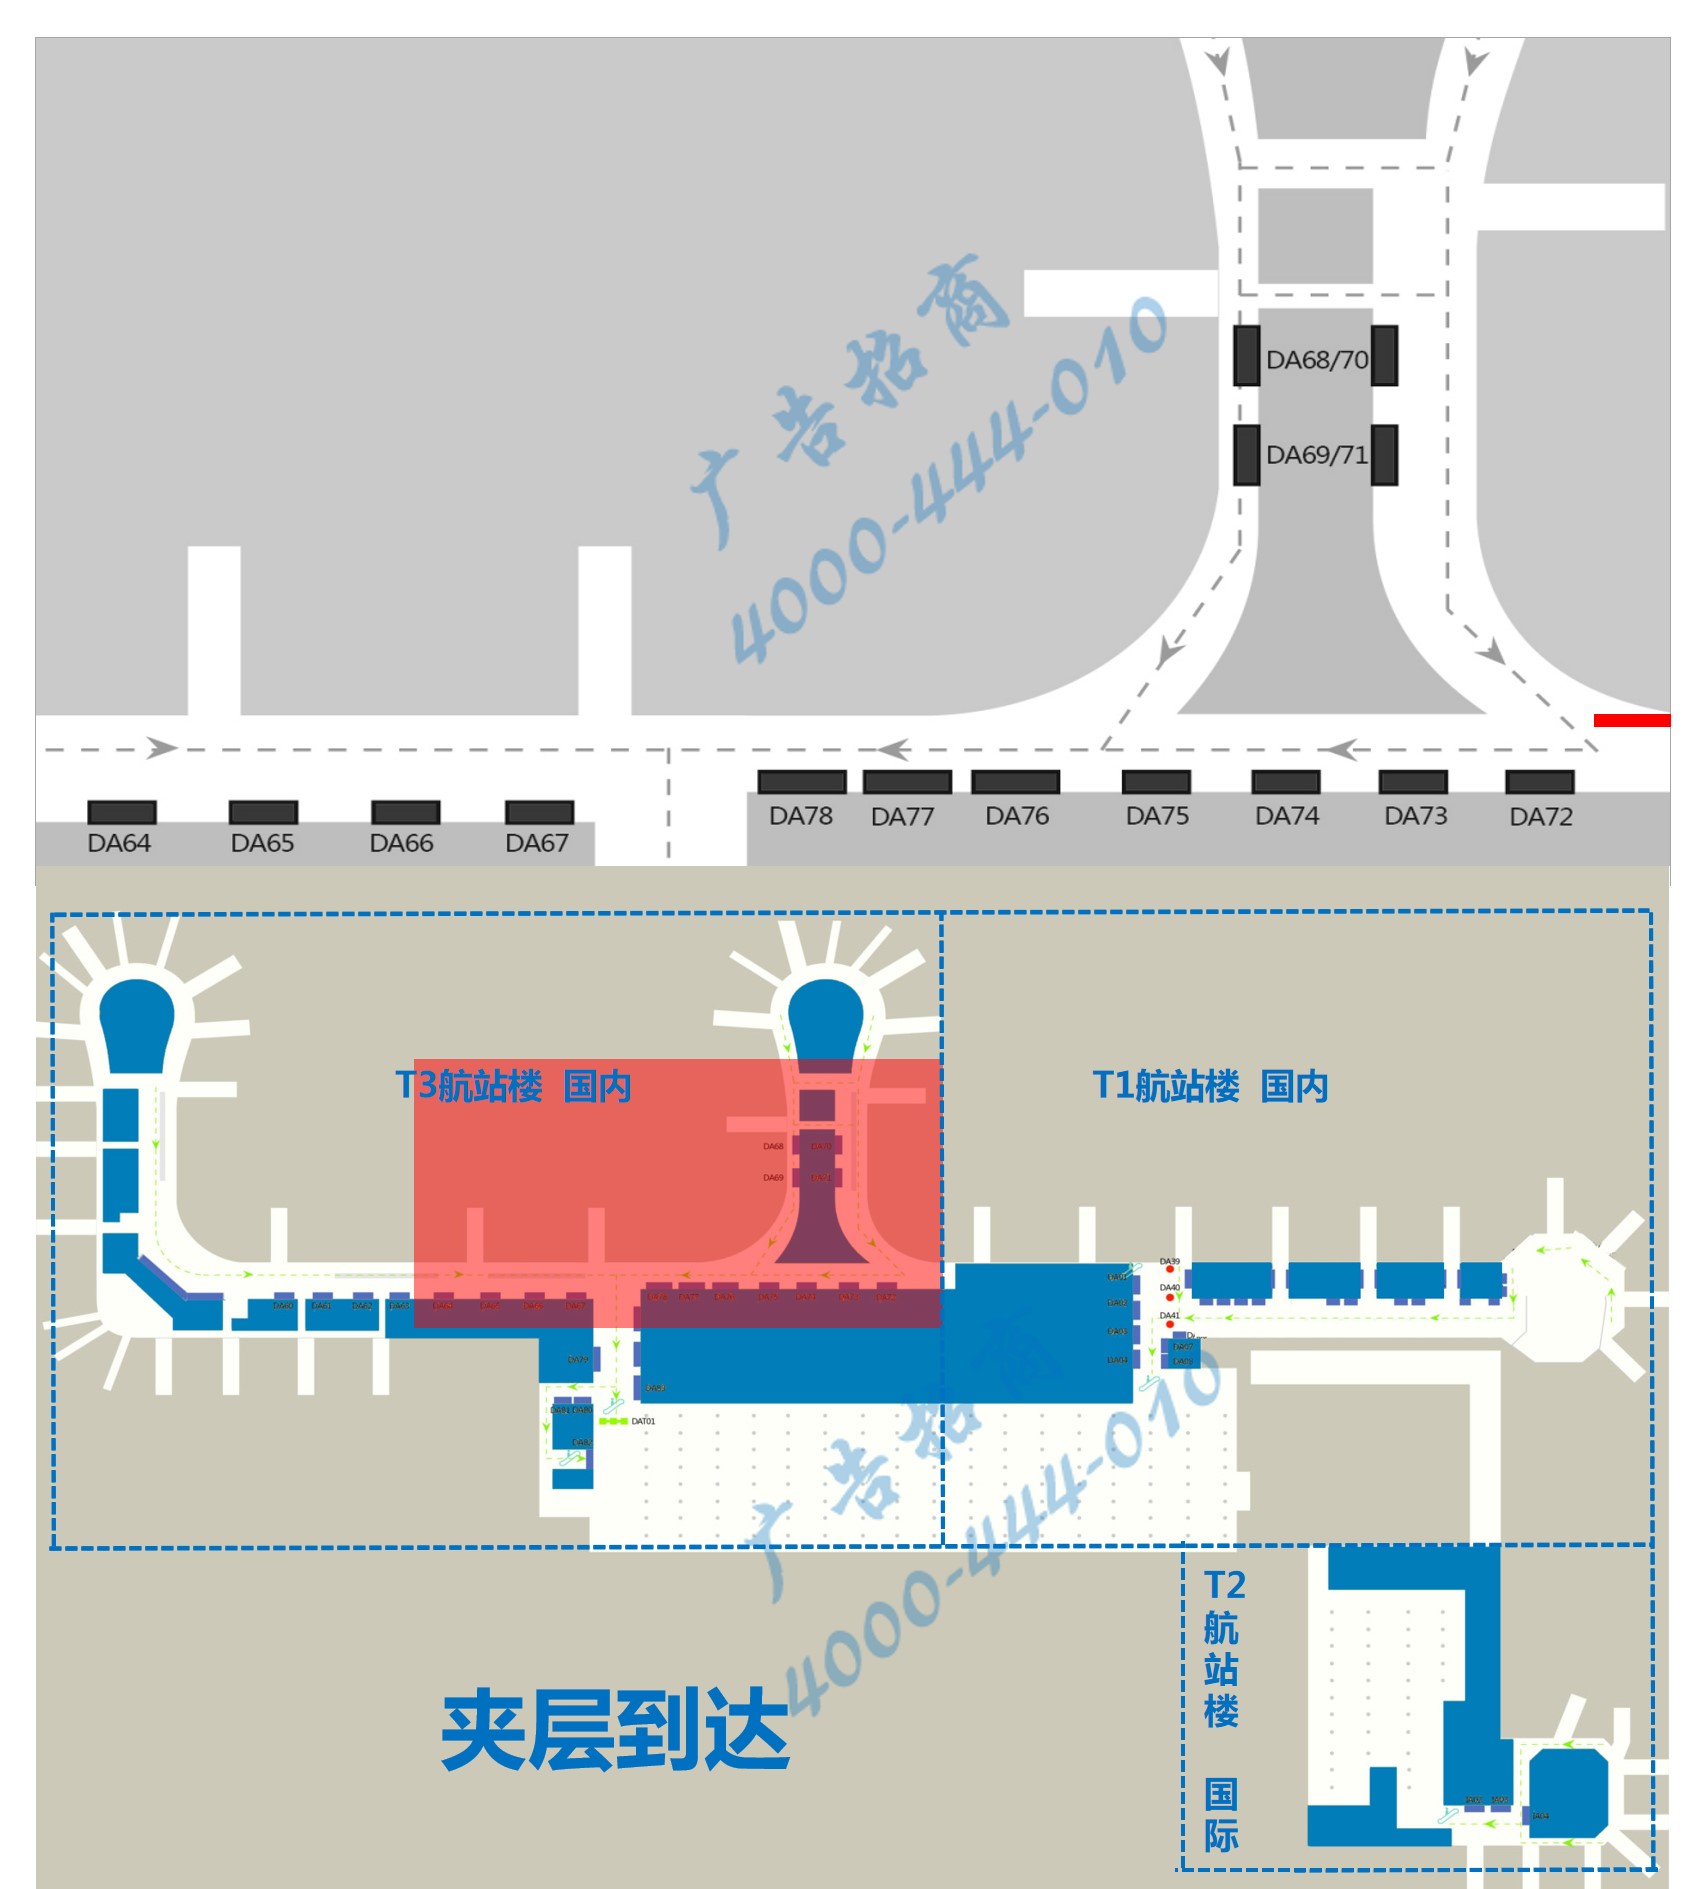 杭州机场广告-T3到达通廊灯箱PDA75/76/77点位图